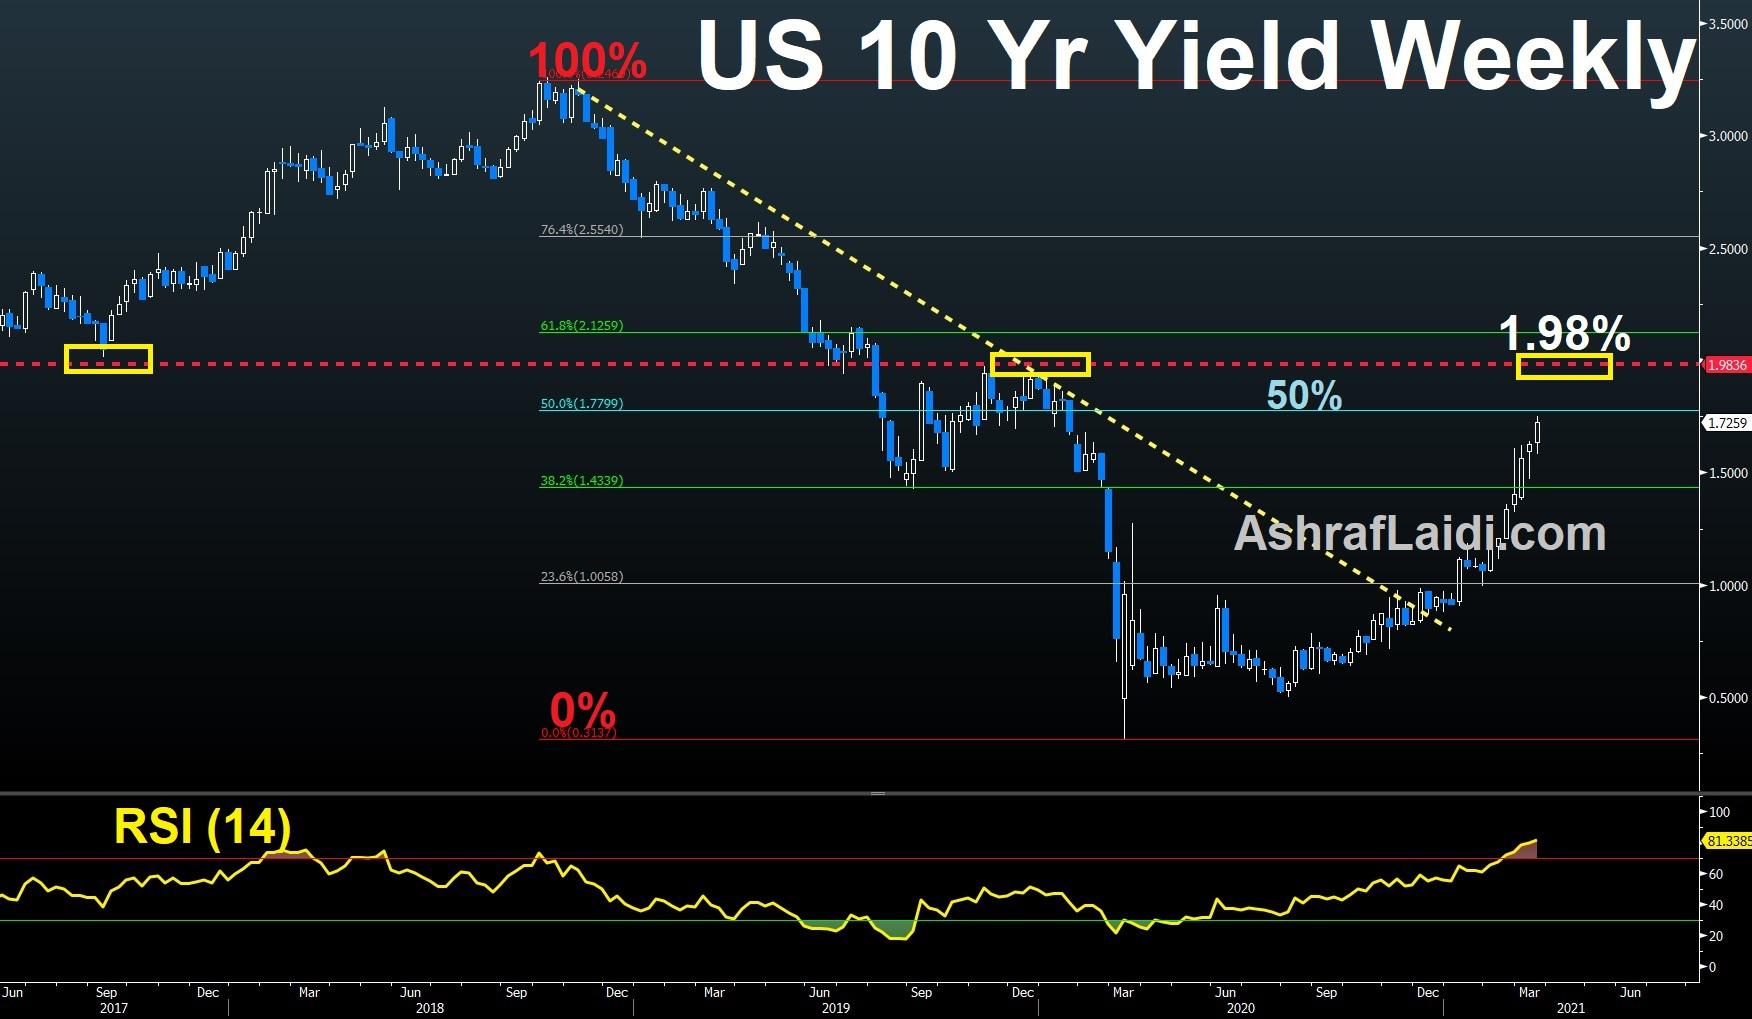 Fed, BoE step back, yields push up